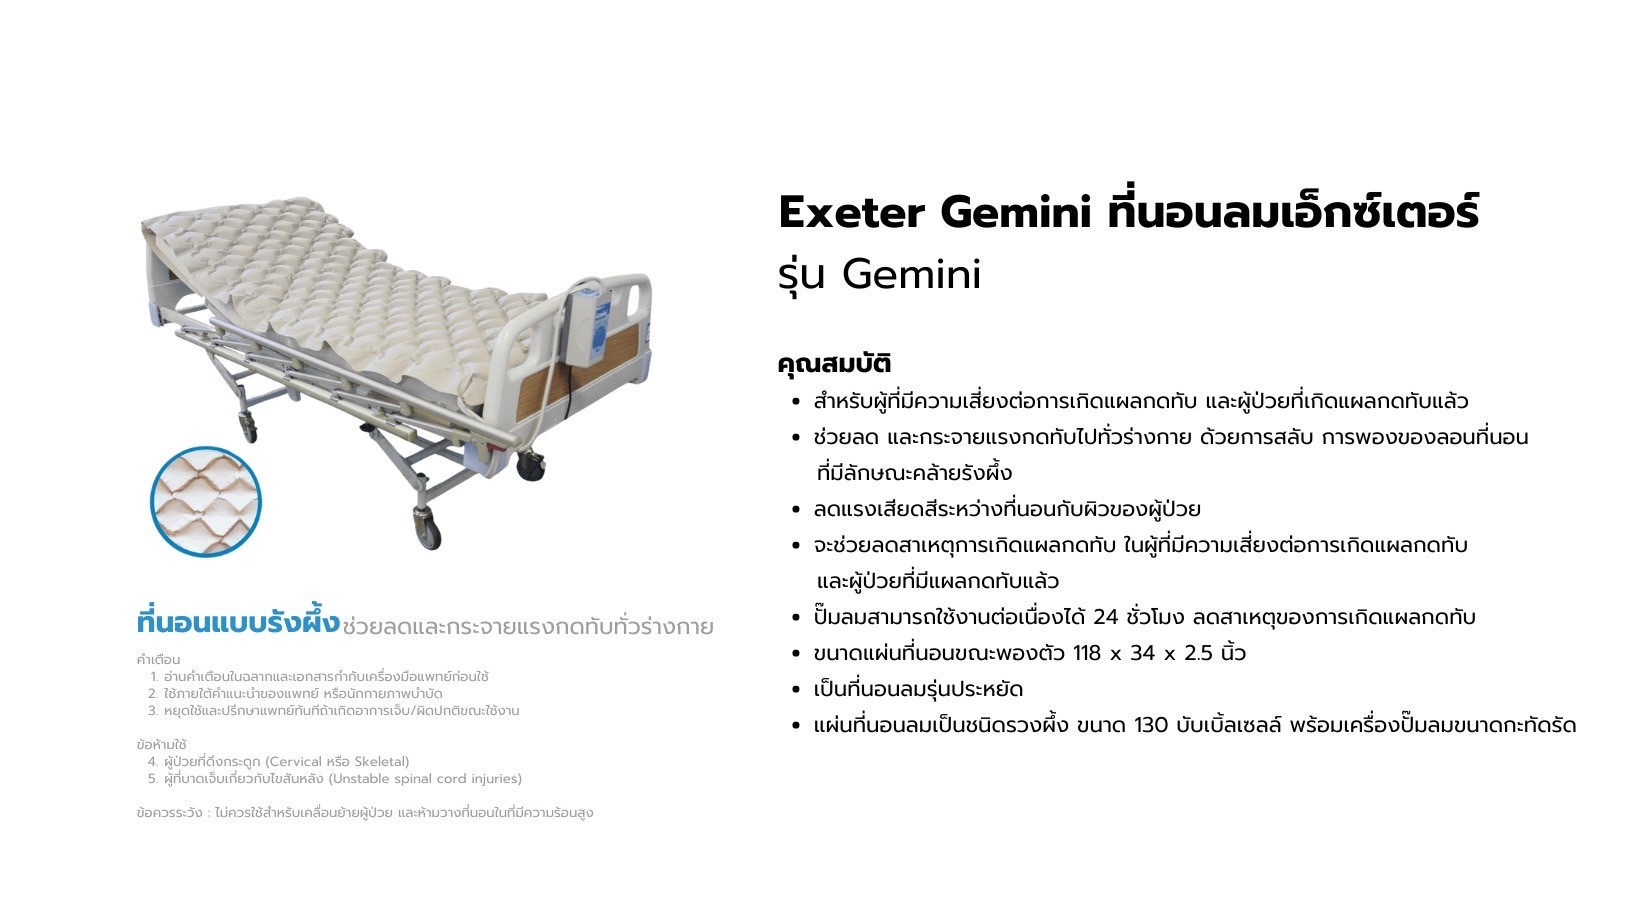 ที่นอนลมแบบรังผึ้งเอ็กซ์เตอร์ Exeter Gemini รุ่น Gemini